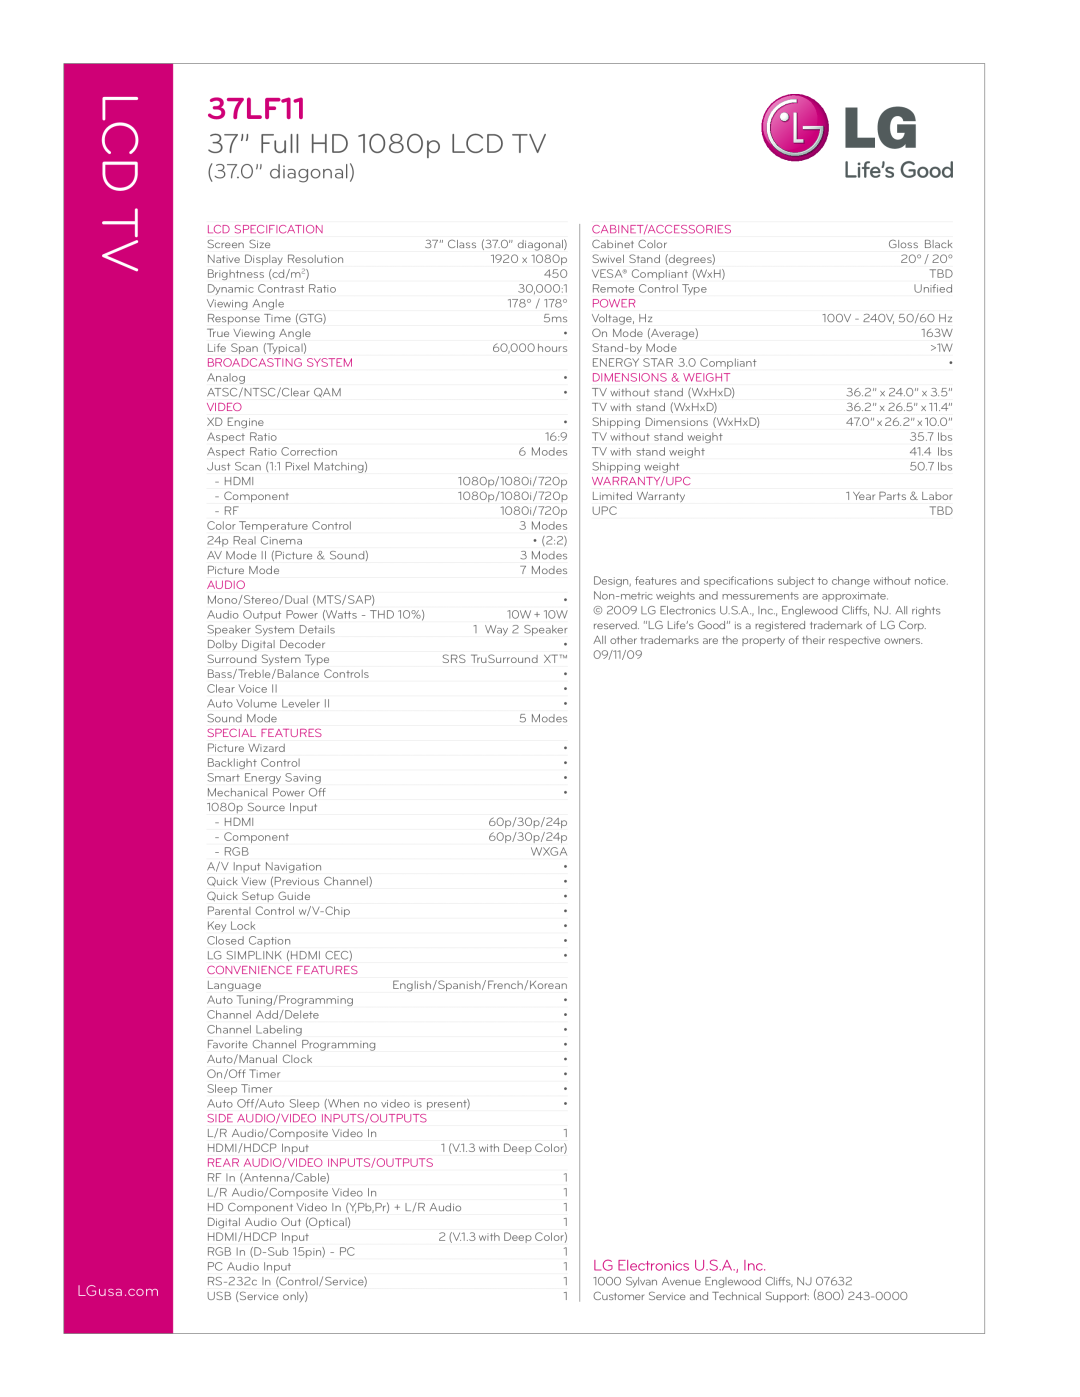 LG Electronics 37LF11 manual Lcd Tv, 37” Full HD 1080p LCD TV, 37.0” diagonal, LGusa.com, LG Electronics U.S.A., Inc 